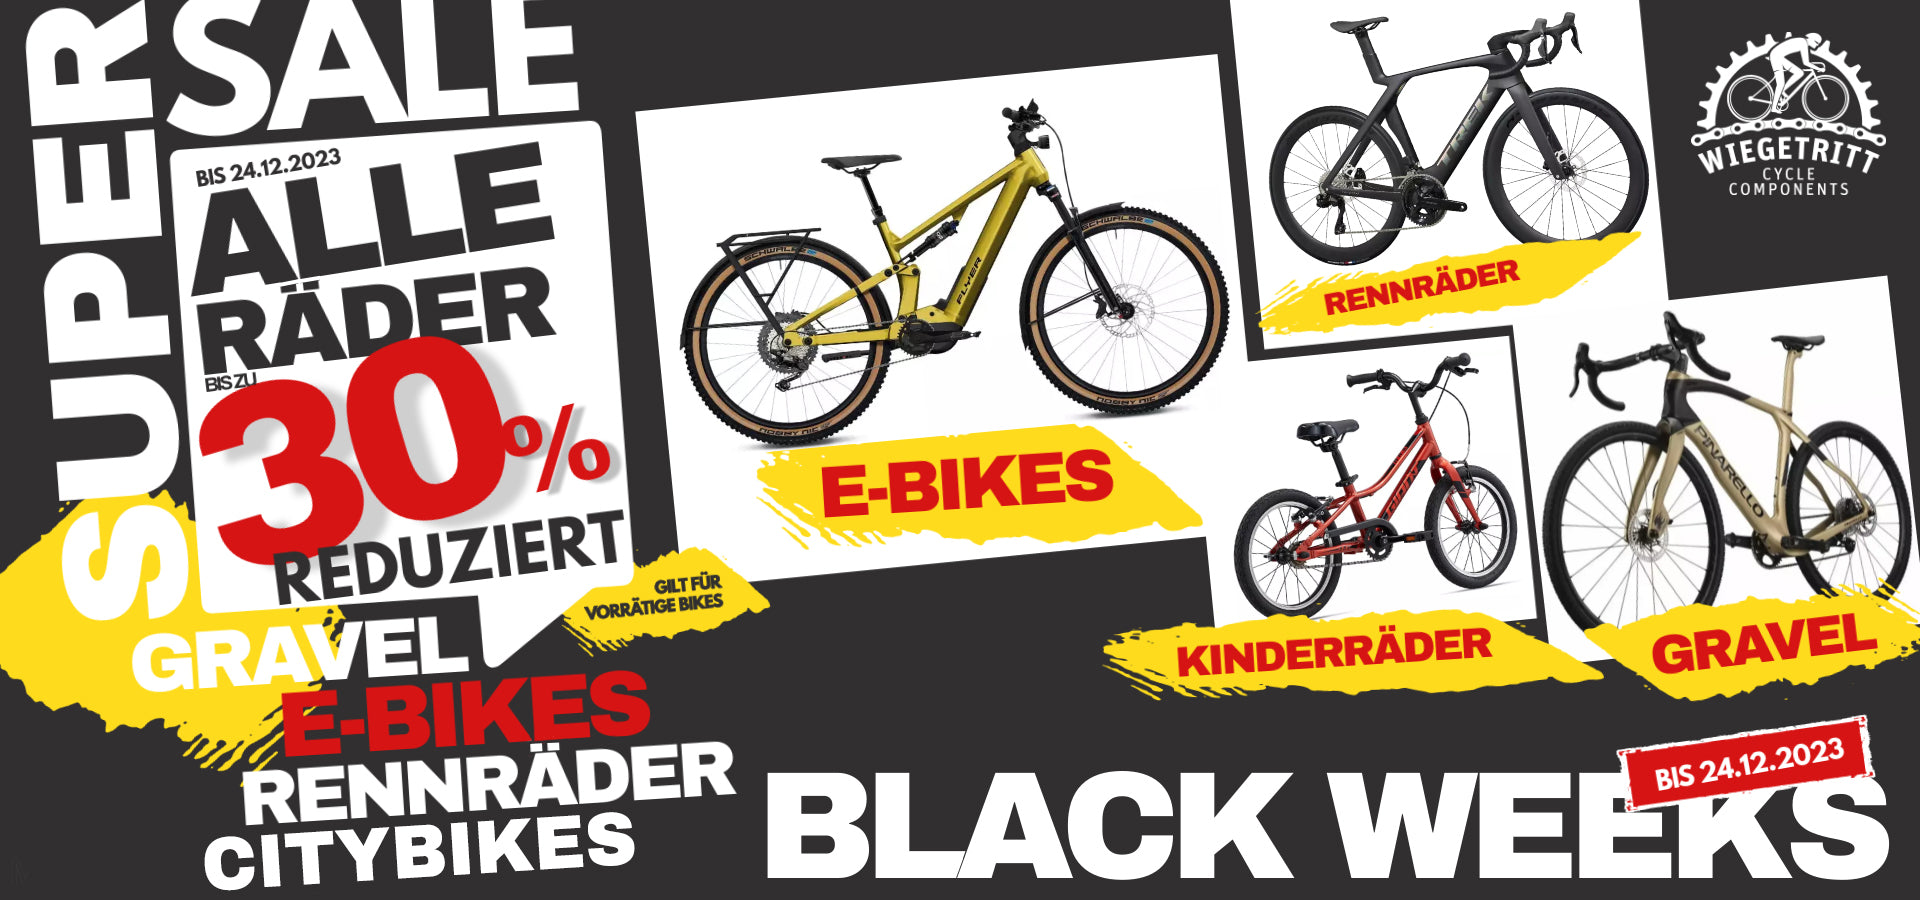 Rabatte auf alle E-Bikes, E-Bikes günstig kaufen, Black Friday, Bremen